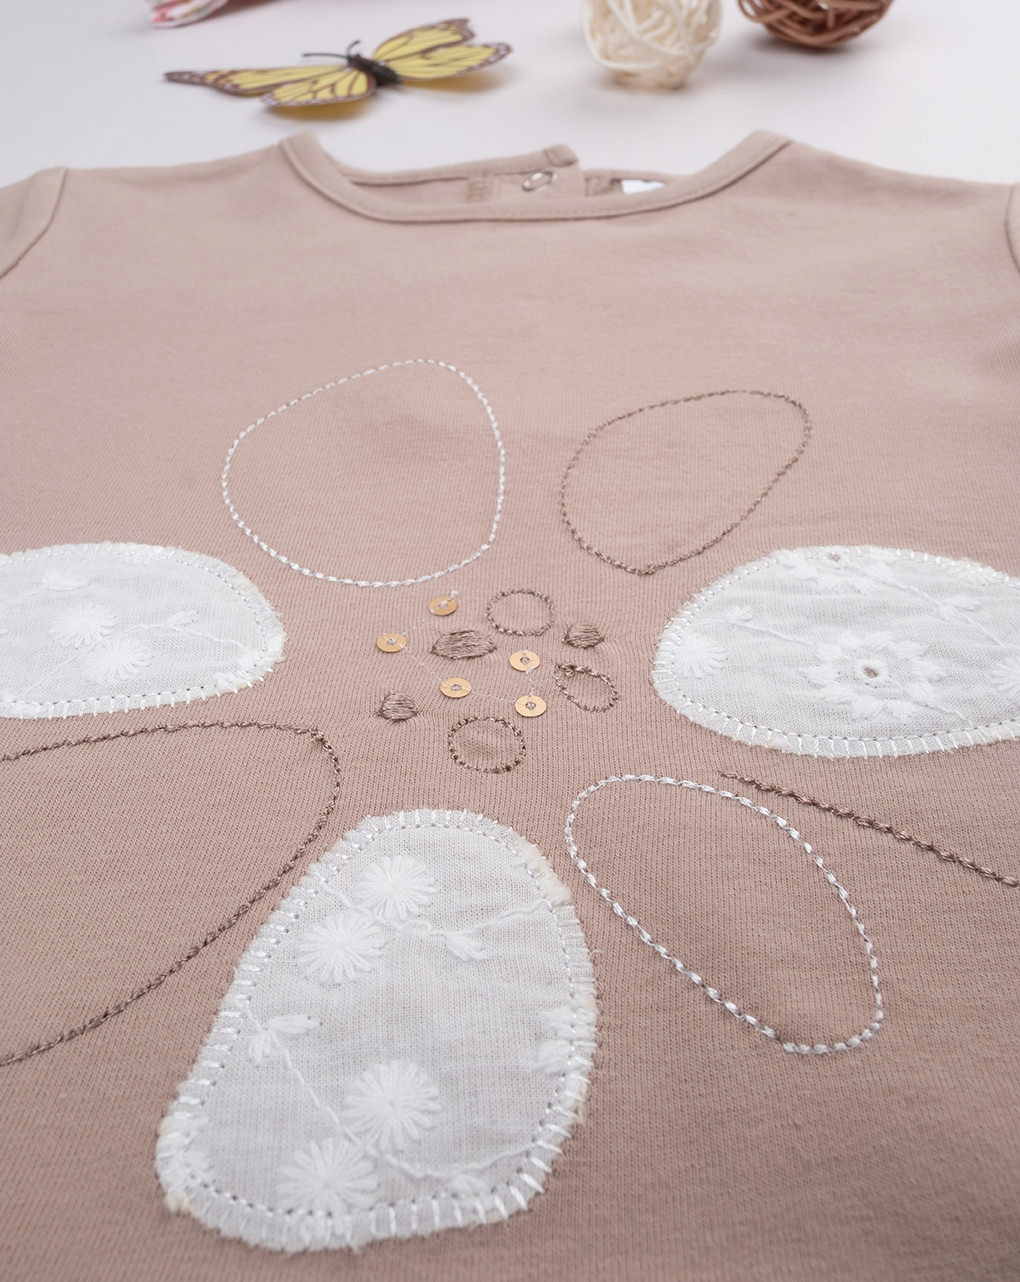 Camiseta niña nata/marrón algodón orgánico - Prénatal